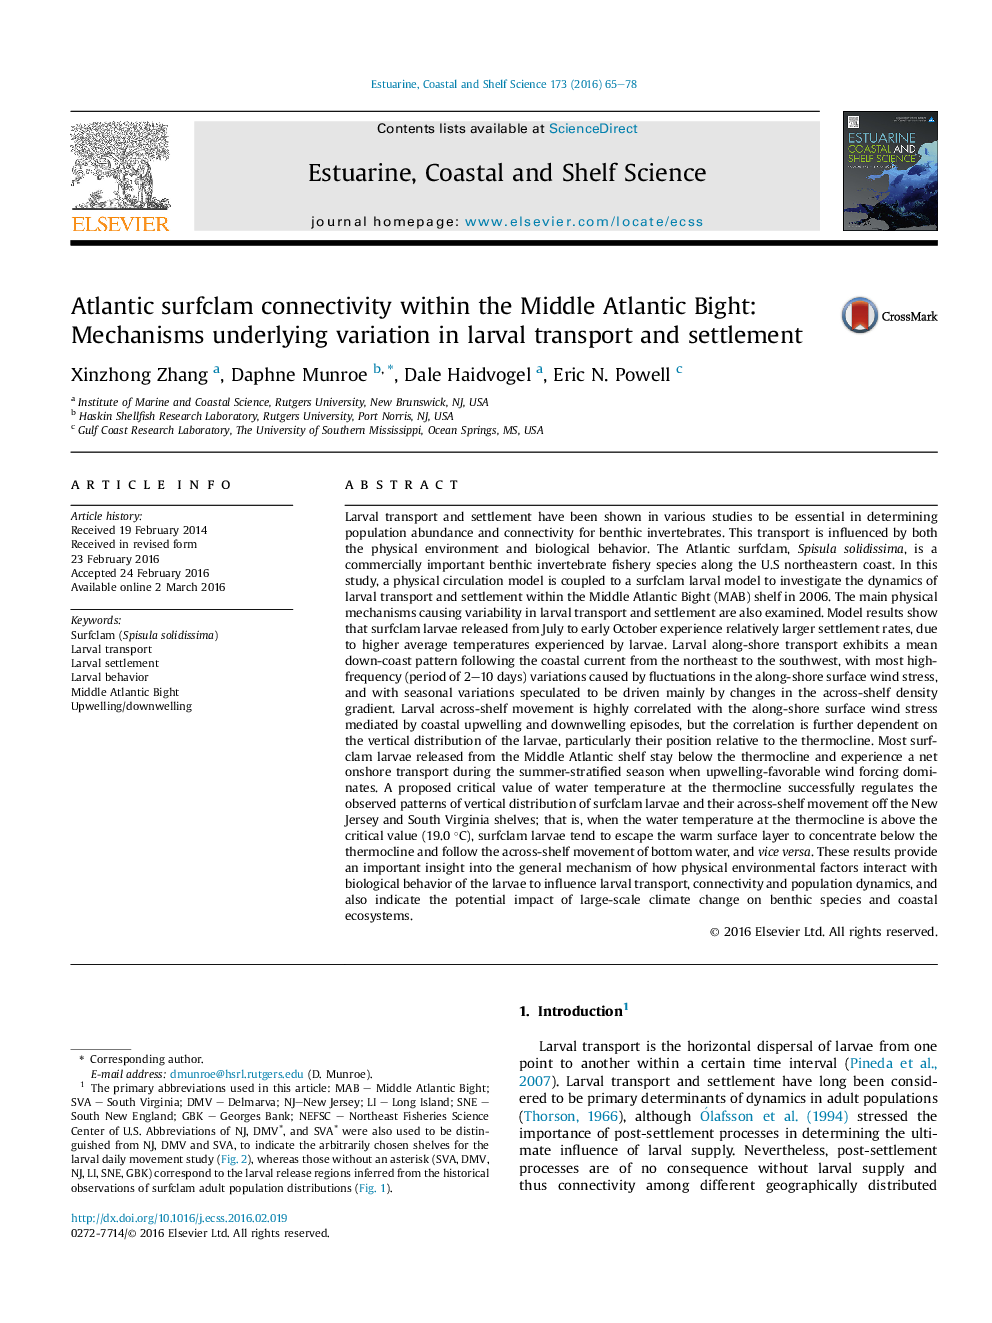 ارتباطات دریایی آتلانتیک در میان بزرگراه خلیج فارس: تغییرات اساسی در حمل و نقل لارو و حل و فصل 